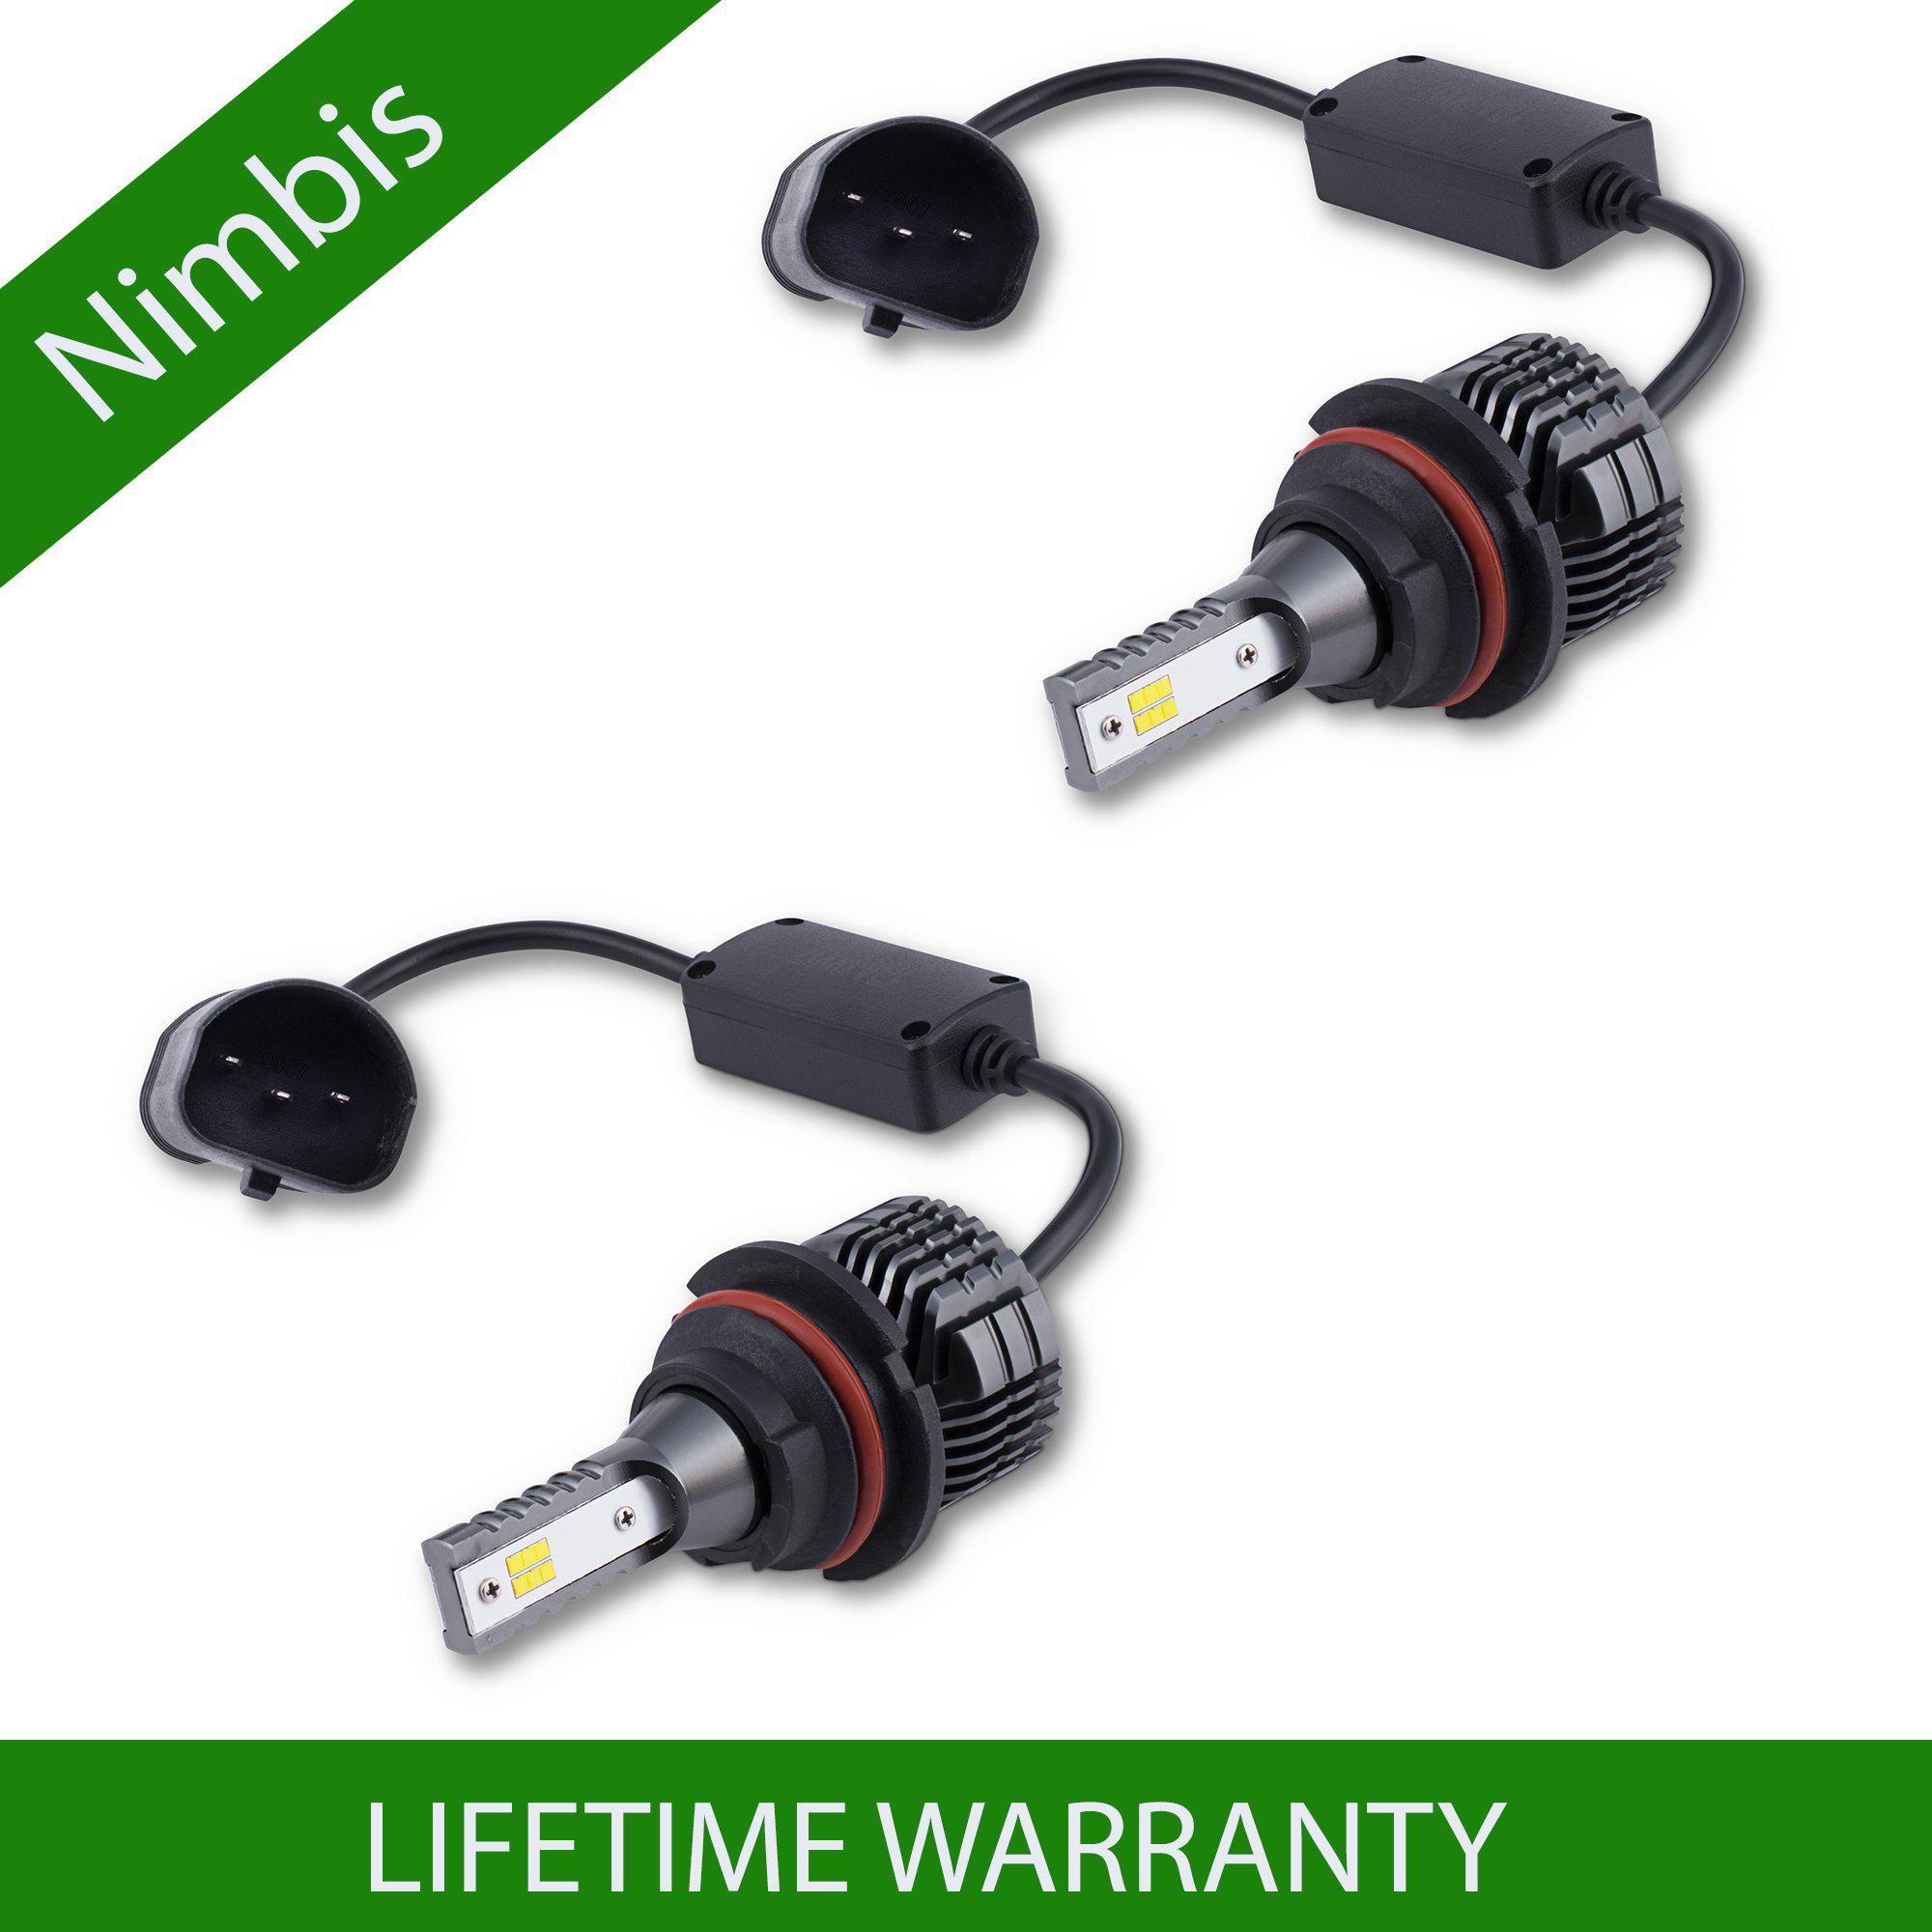 Nimbis 9007 LED Headlight Conversion Kit - LED Light Street